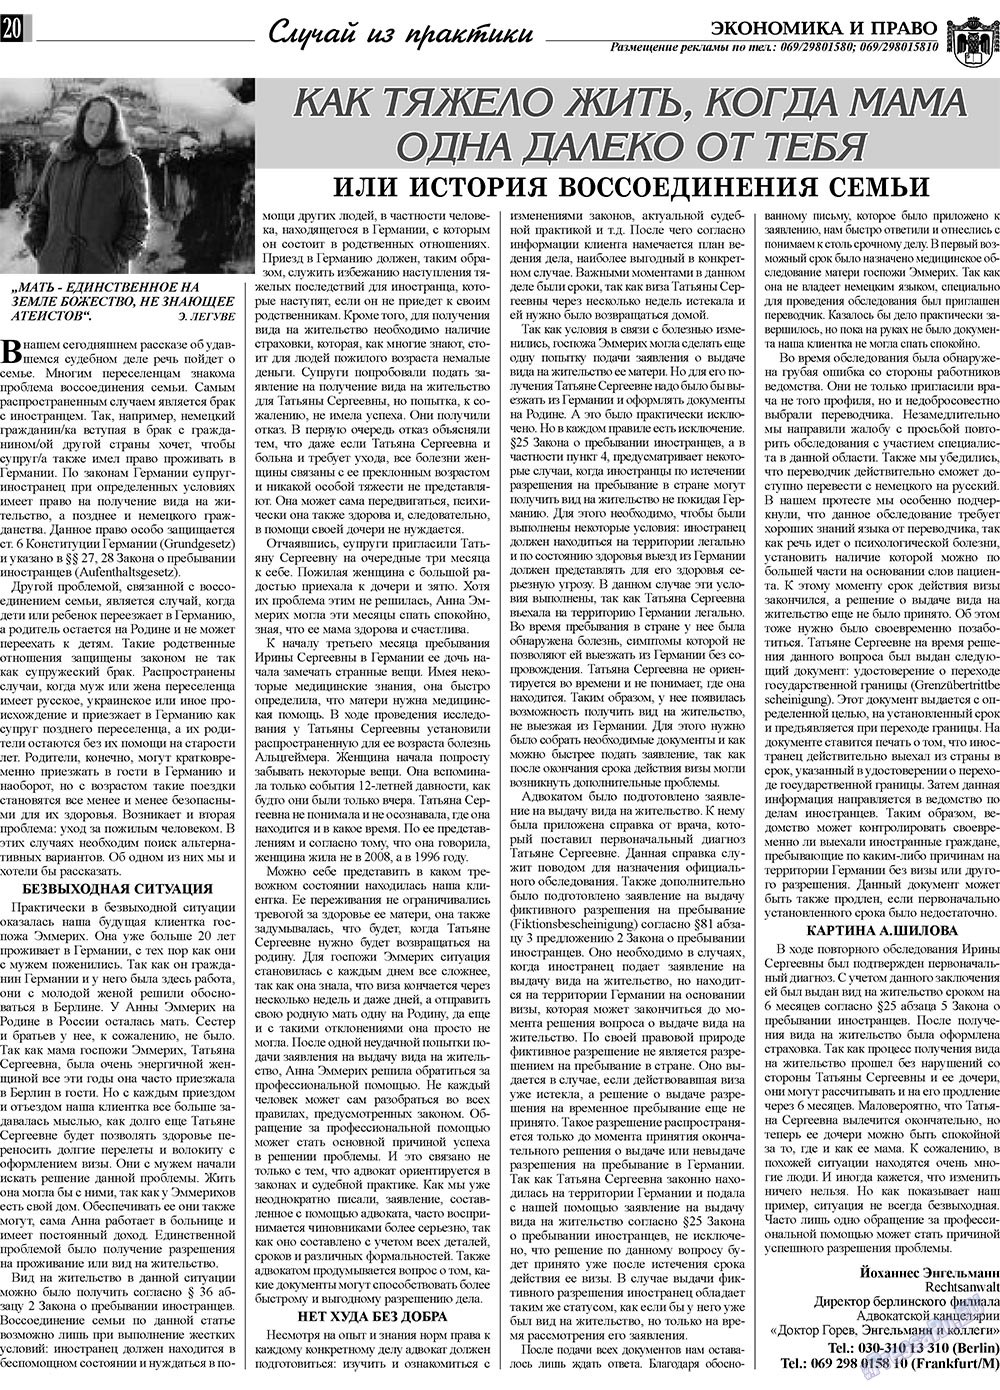 Экономика и право, газета. 2010 №2 стр.20